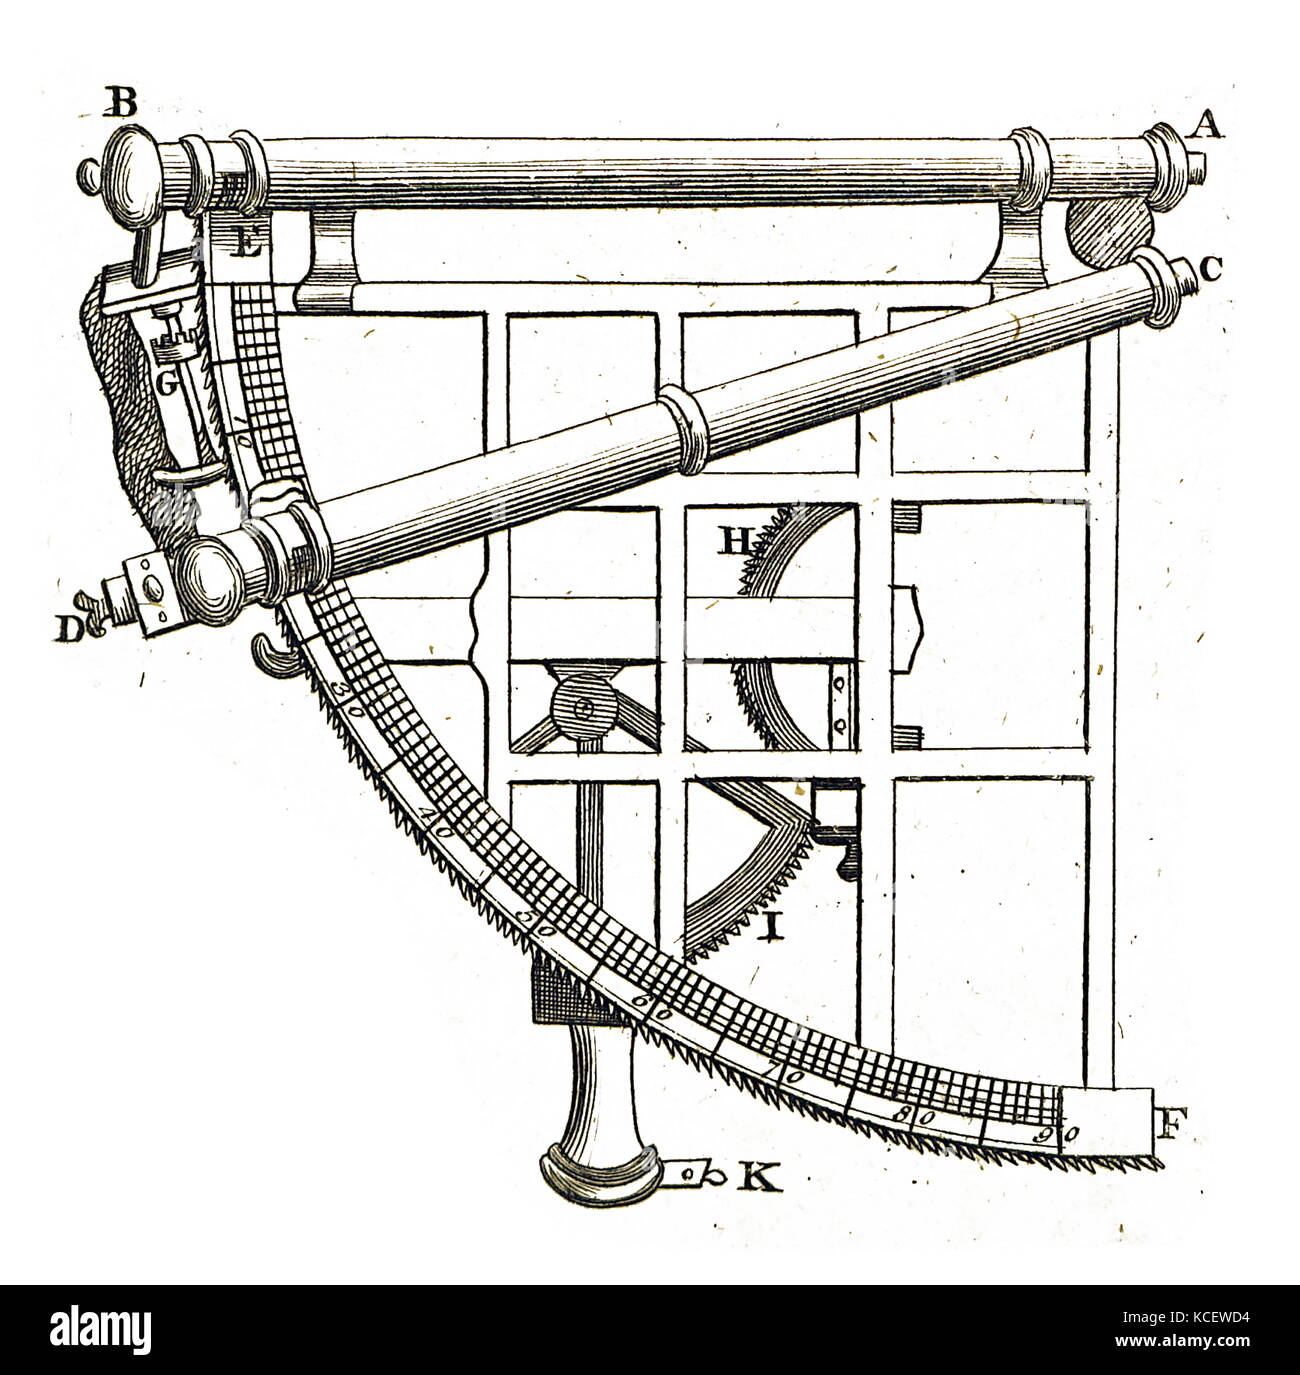 Illustration d'un quadrant astronomique, un instrument utilisé pour mesurer les angles jusqu'à 90 degrés. En date du 18e siècle Banque D'Images